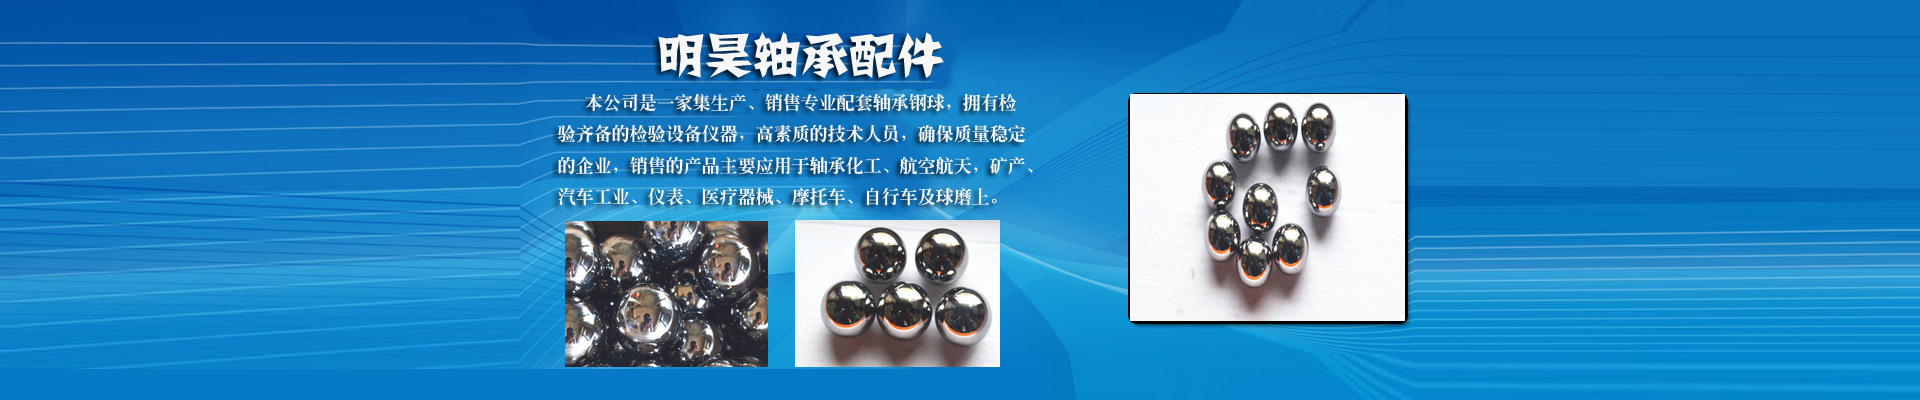 厂家现货批发非标钢球 27.3MM 高精度轴承钢球 耐压耐磨 质保示例图3